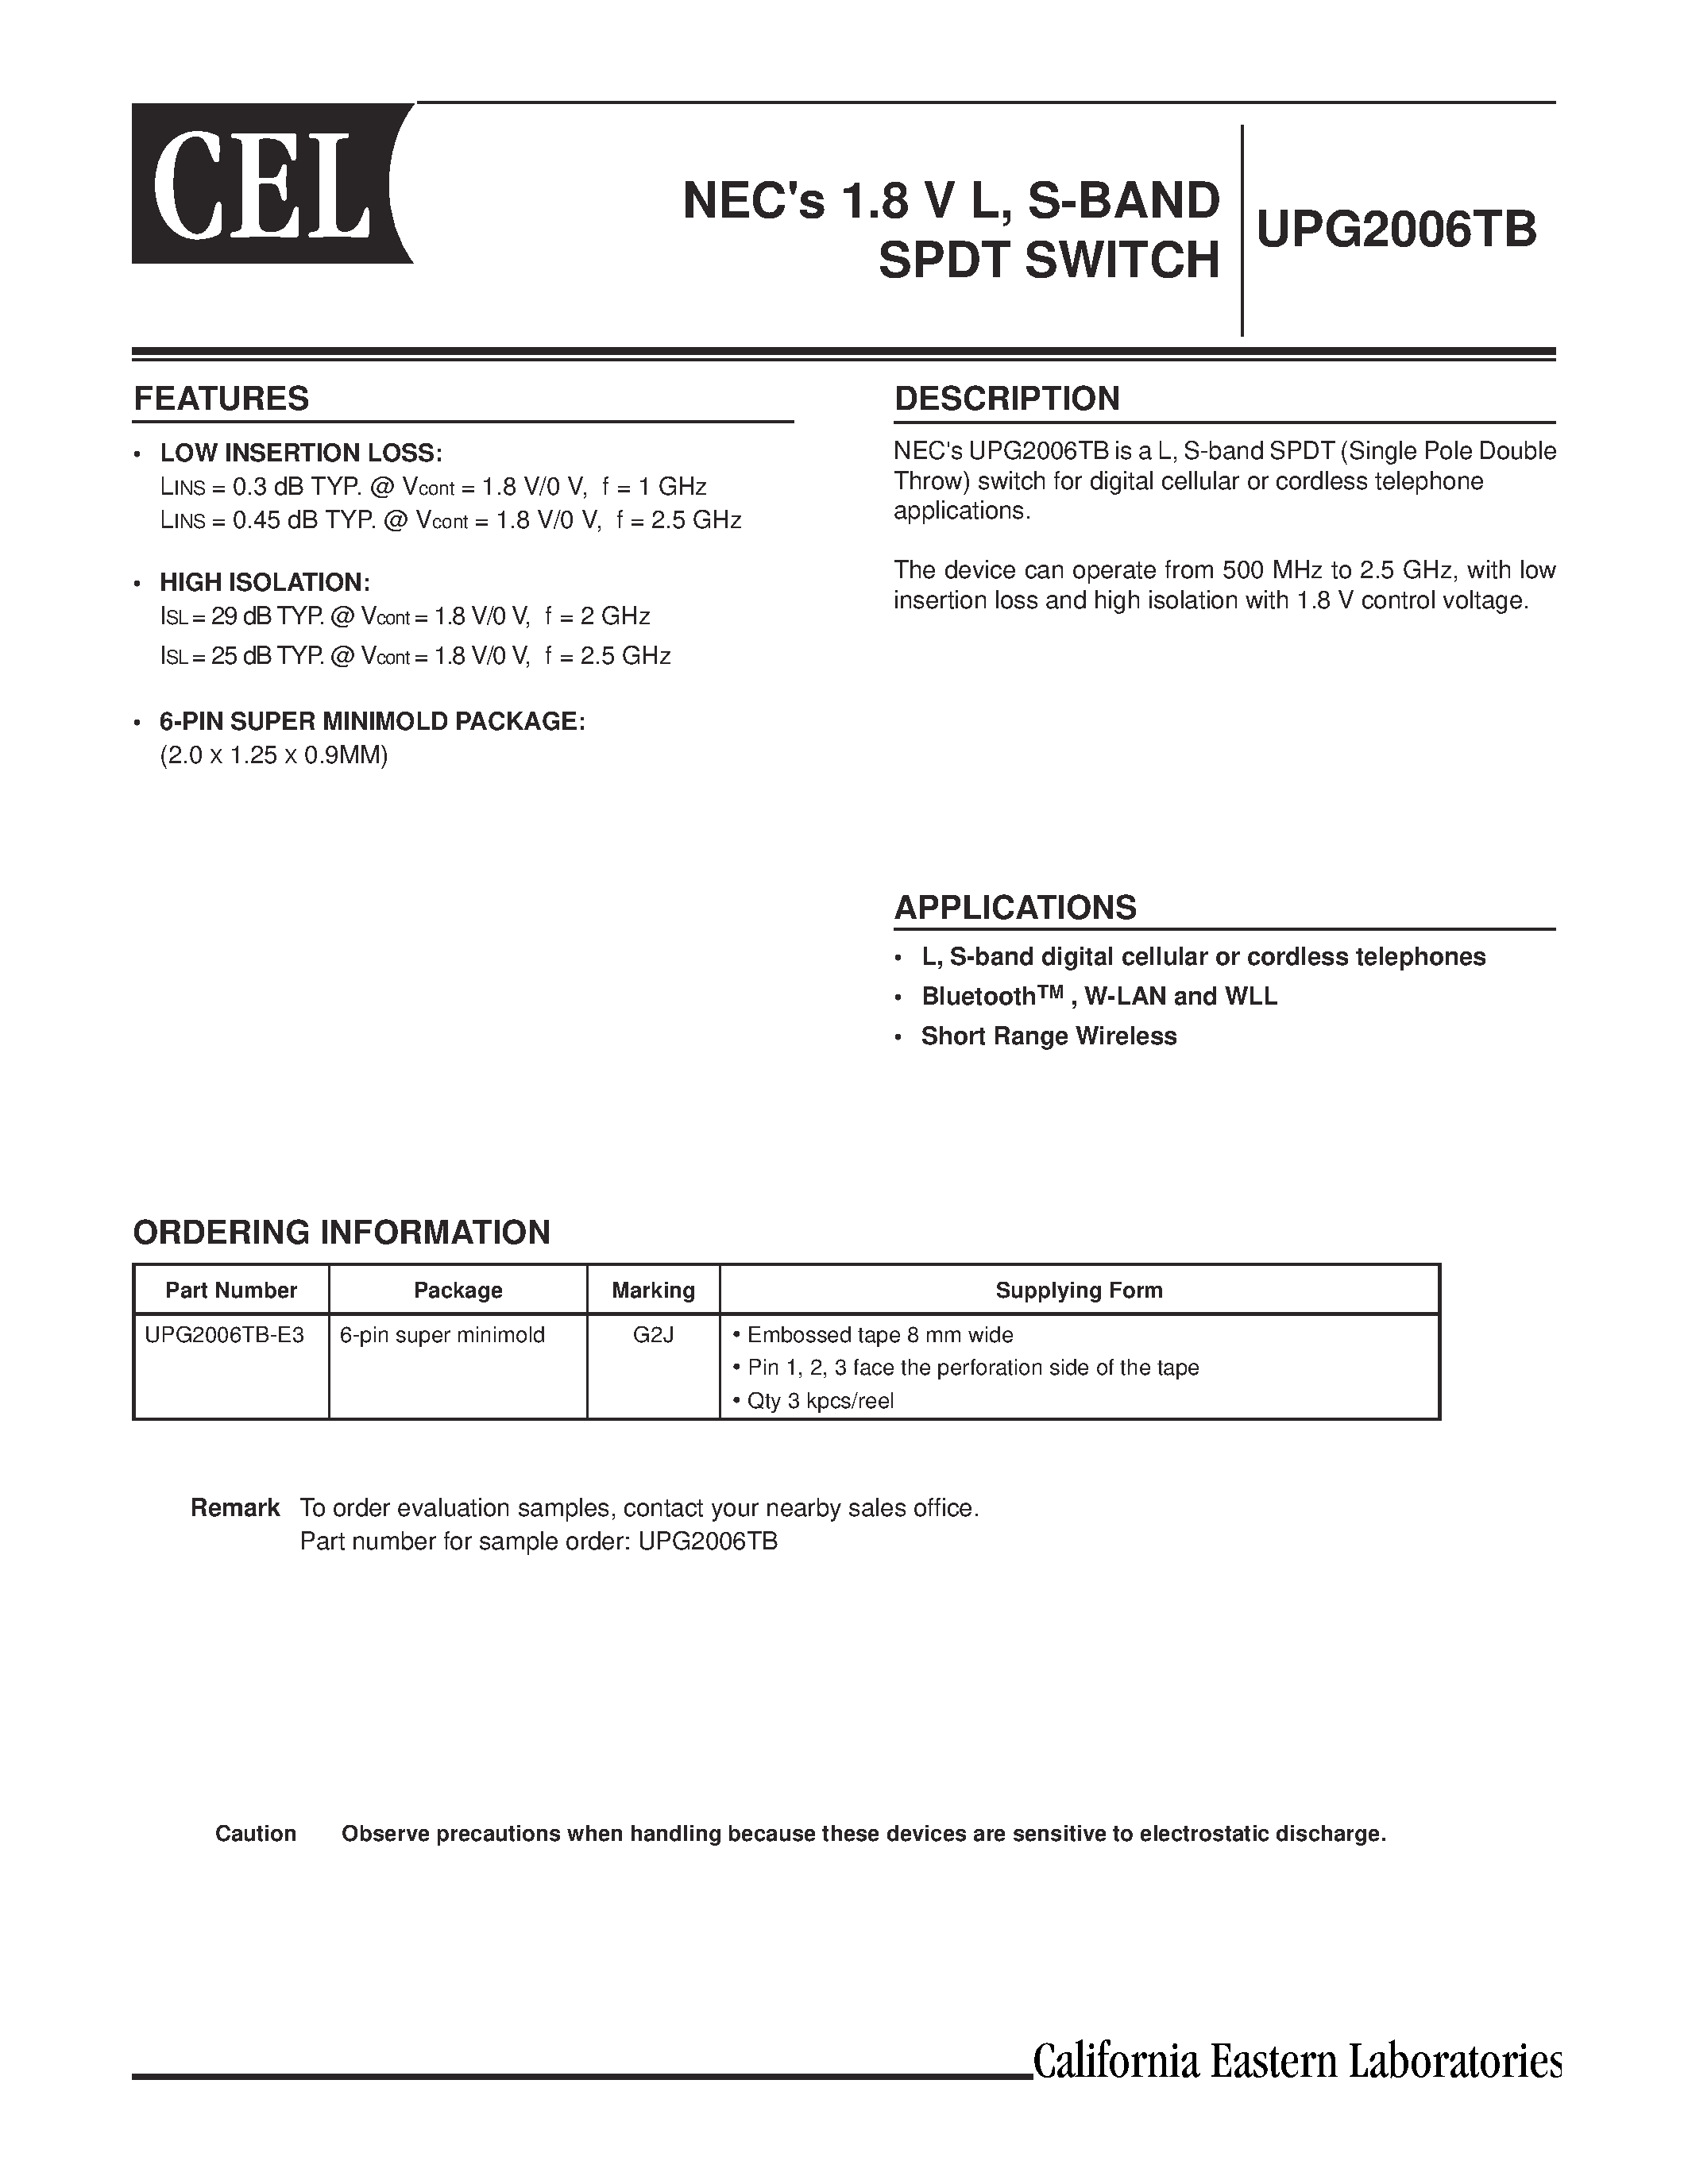 Даташит UPG2006TB - NECs 1.8 V L/ S-BAND SPDT SWITCH страница 1